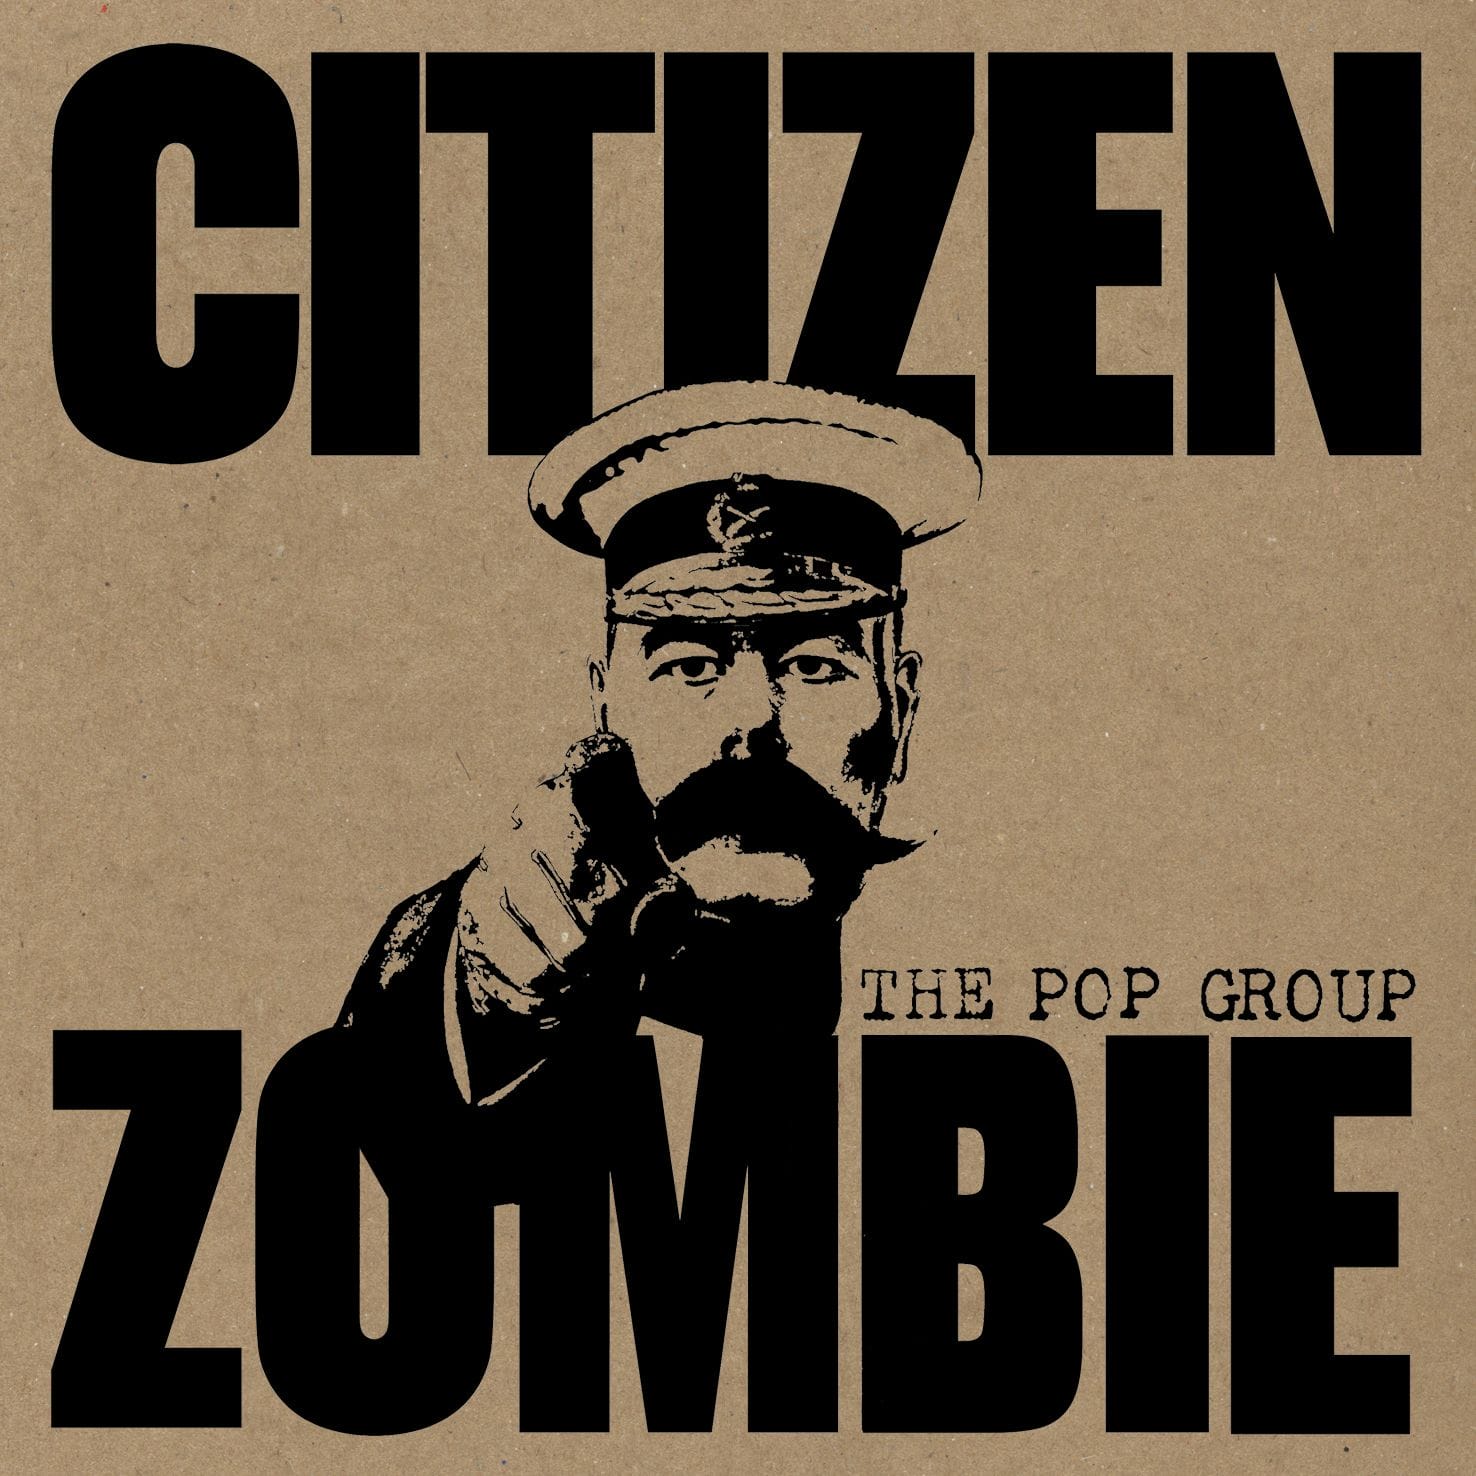 THE POP GROUP "Citizen Zombie" 1